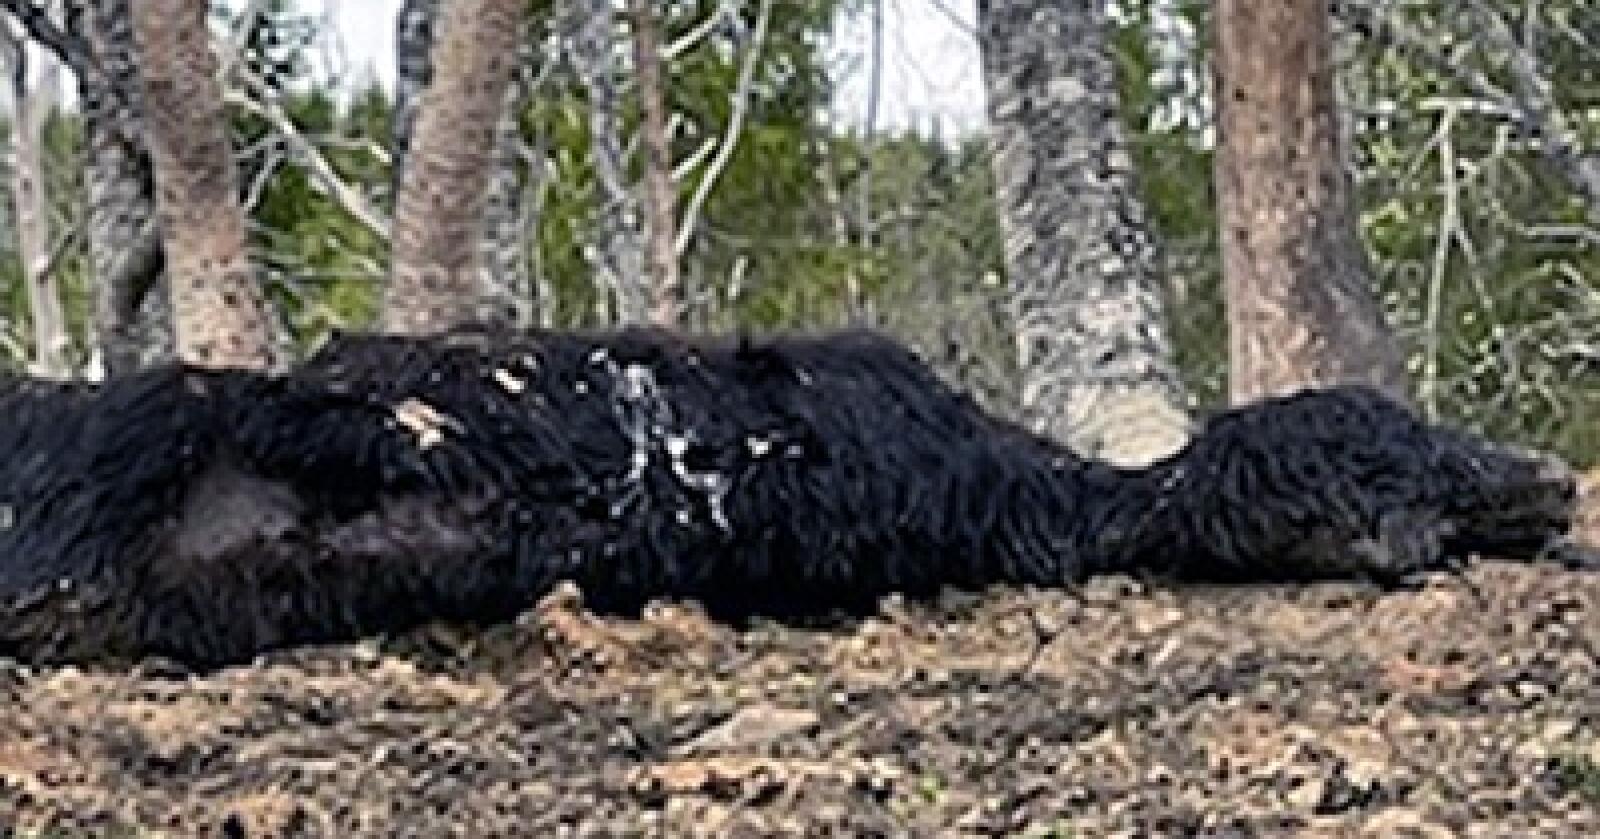 Kadaver av storfe liggende i skogen i Tjeldsund kommune. Dyreholdet er vedtatt avviklet. Foto: Privat